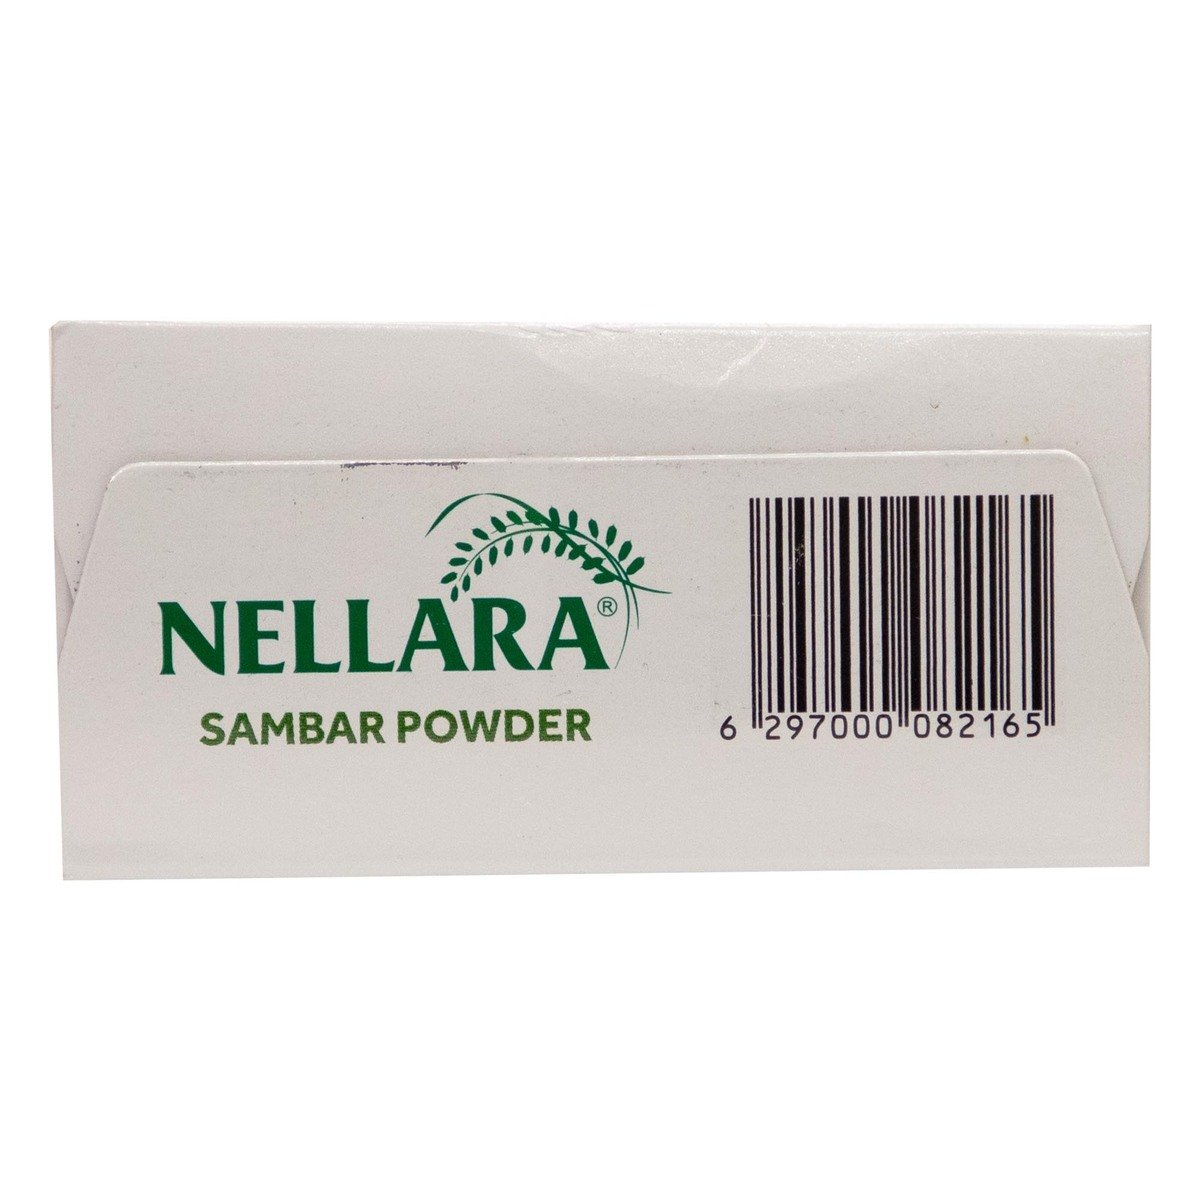 Nellara Sambar Powder 165 g